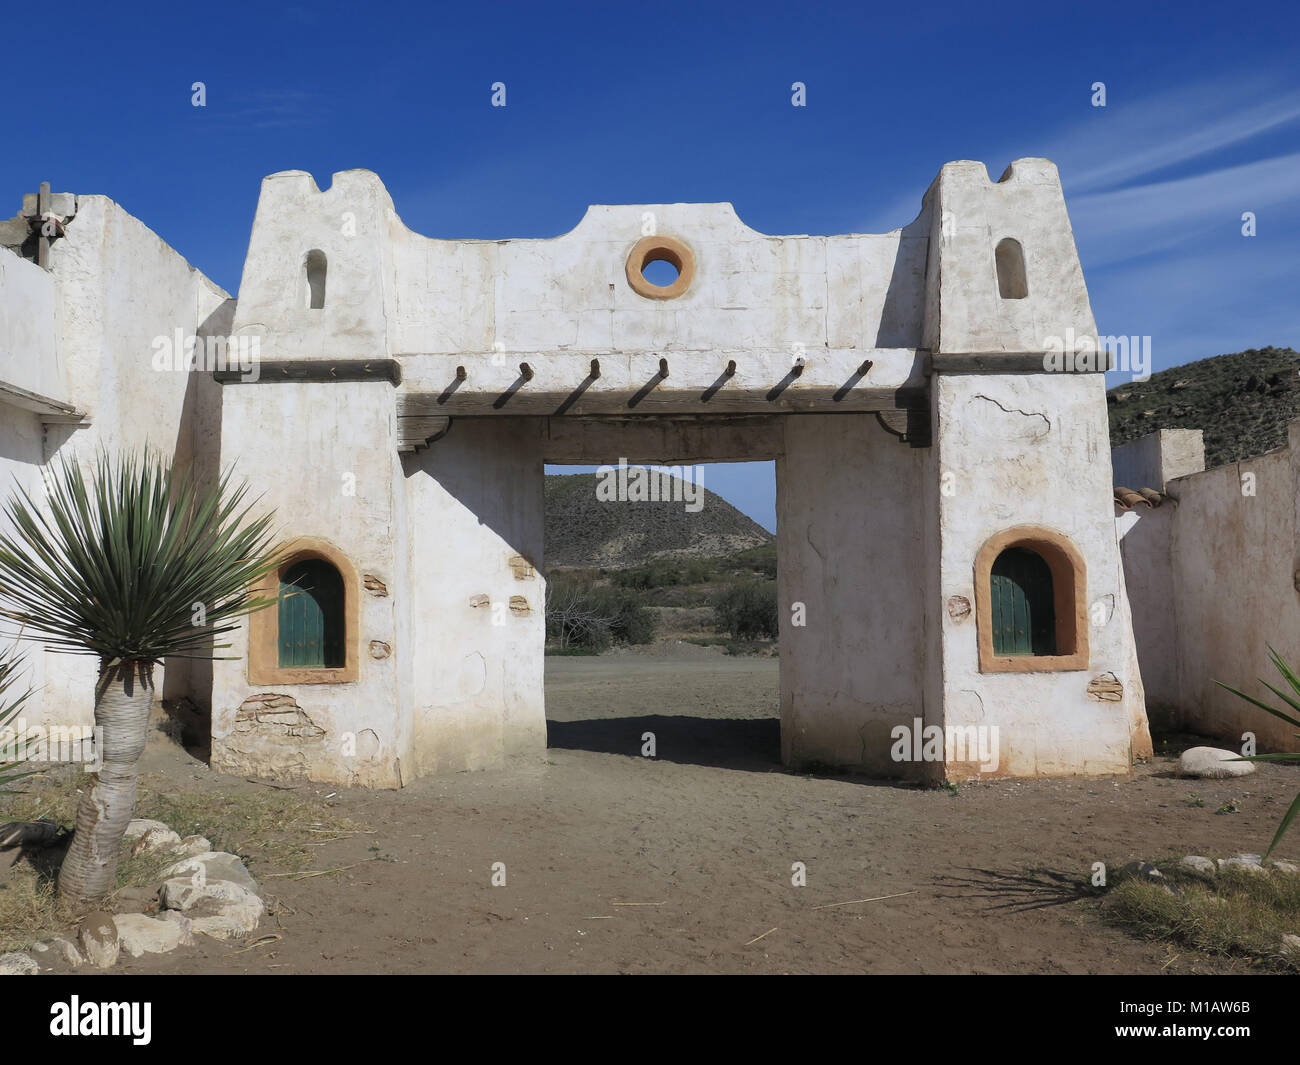 Fort Bravo, Espagne - 23 janvier 2016 : Les bâtiments de style mexicain à Fort Bravo Tournage du désert de Tabernas. Banque D'Images